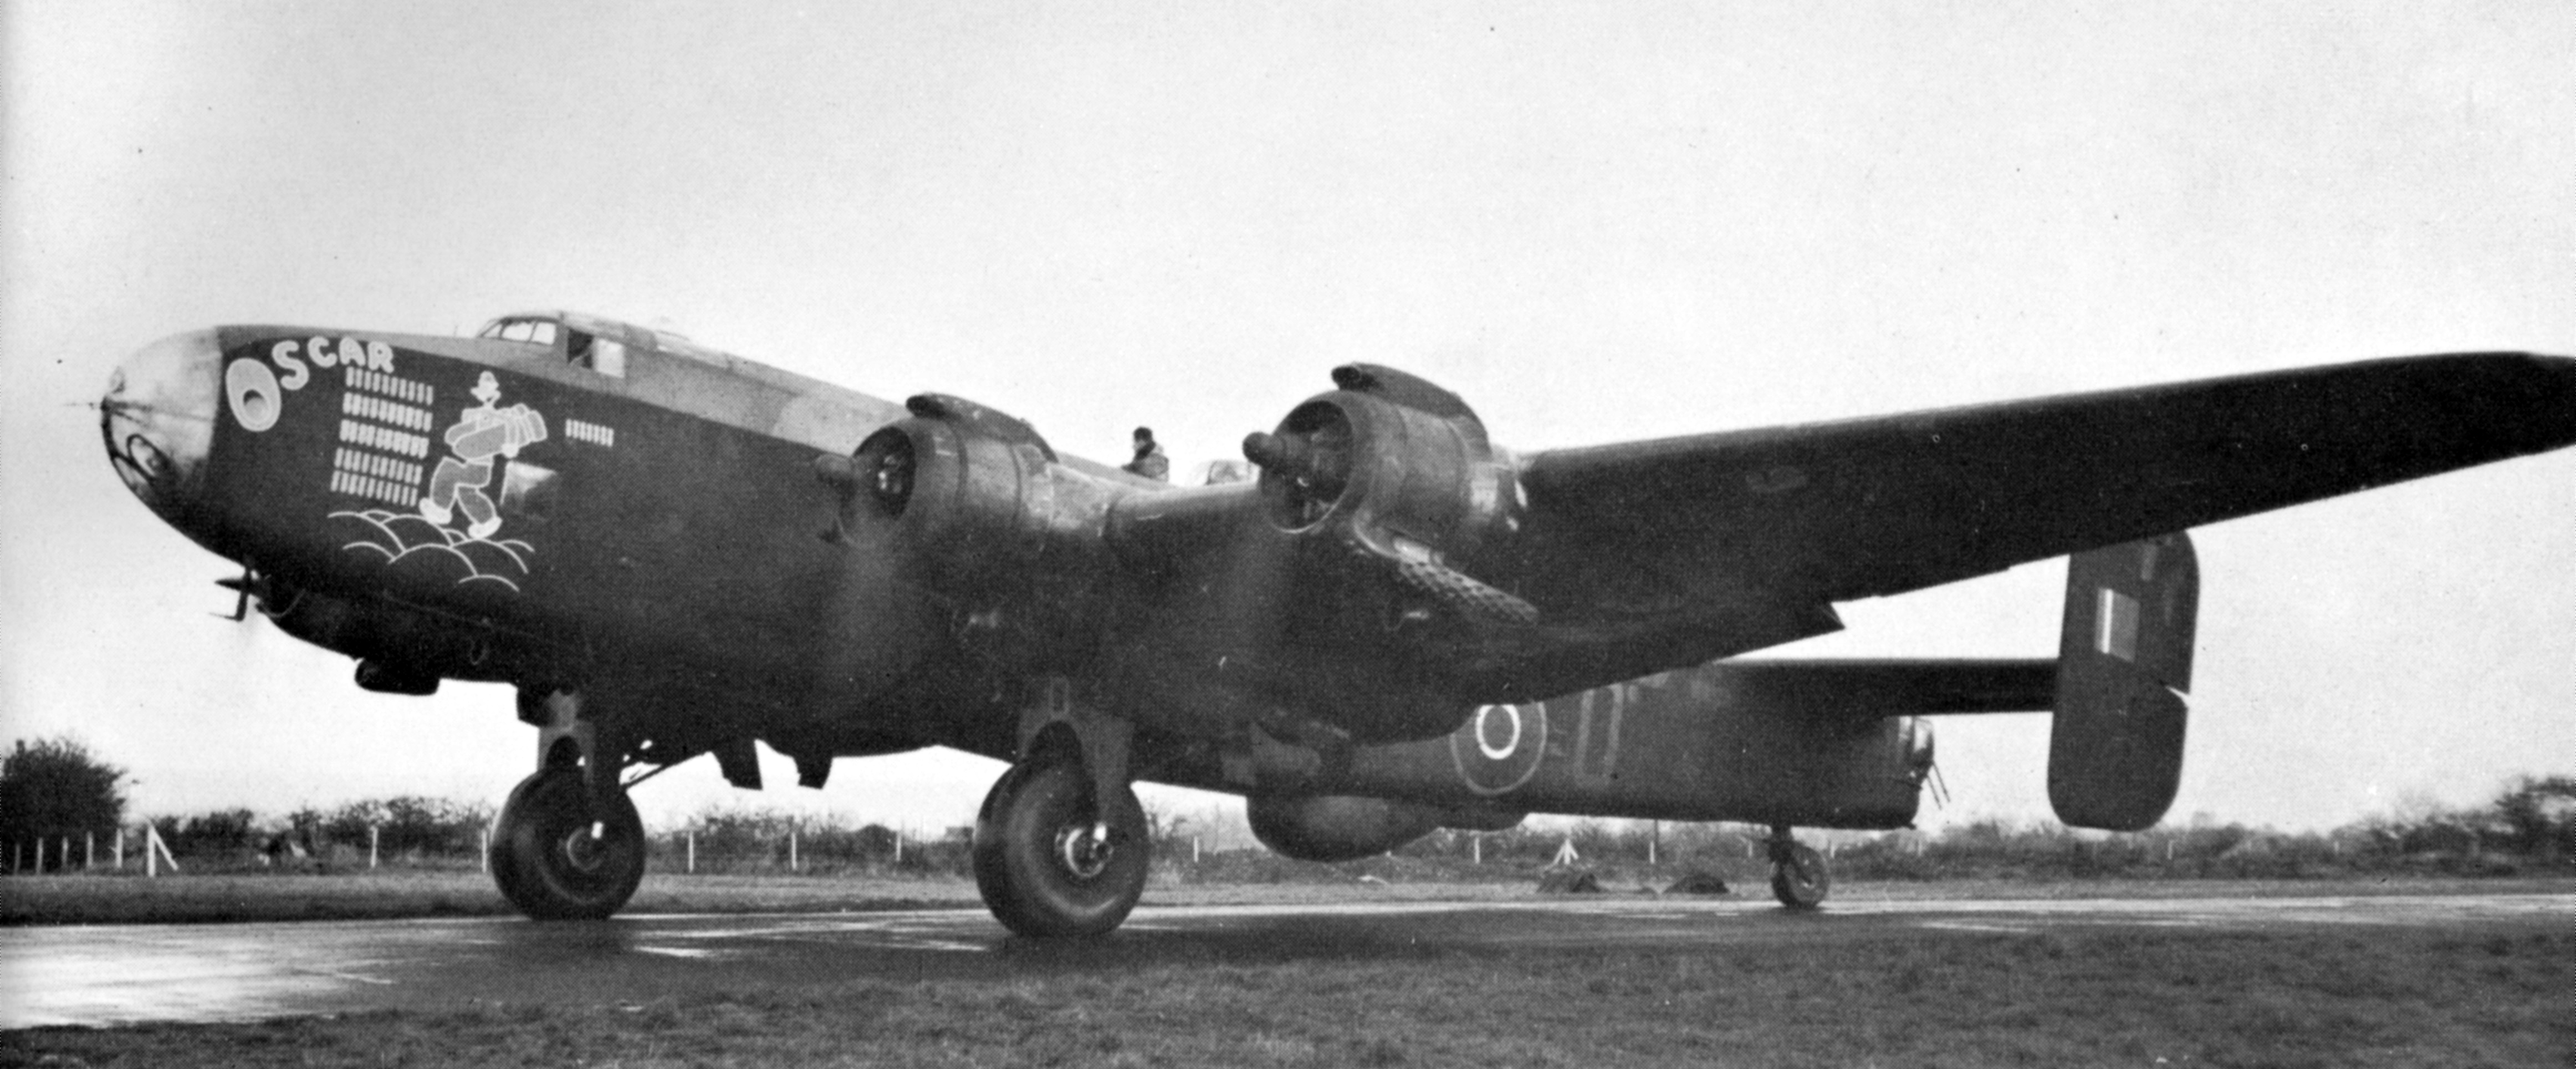 Le bombardier Halifax « "O" for Oscar » du 424e Escadron « Tiger » roule sur la piste en vue de décoller. Pendant son service dans le 424e Escadron, l’avion a accompli 62 missions de bombardement contre des cibles ennemies. Ce Halifax III est muni de moteurs en étoile Hercules de Bristol, mais d’autres variantes sont dotées de moteurs Merlin de Rolls-Royce, qui sont mieux connus. PHOTO : MDN